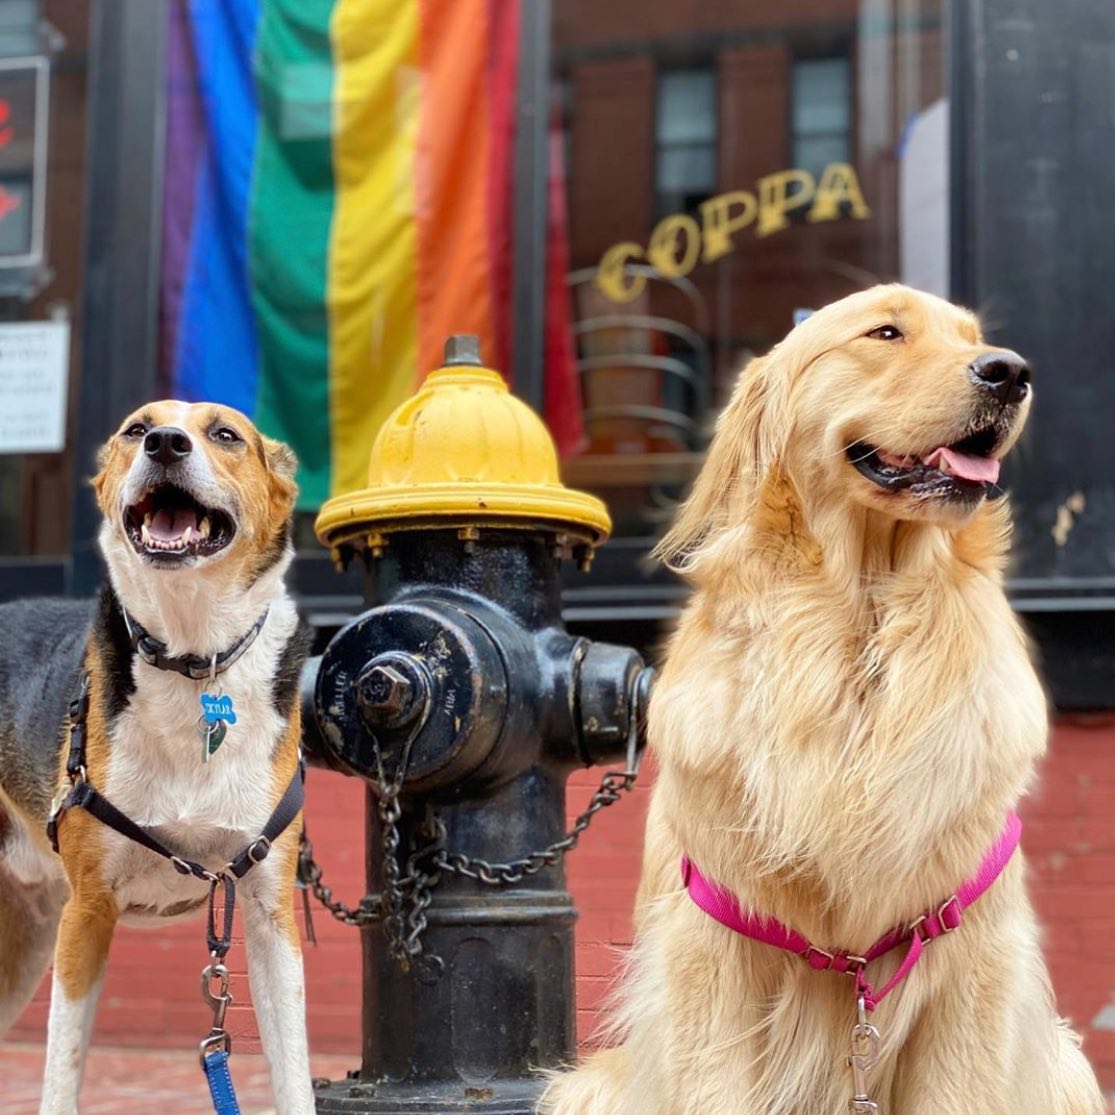 Coppa, Dog-Friendly Restaurants in Boston